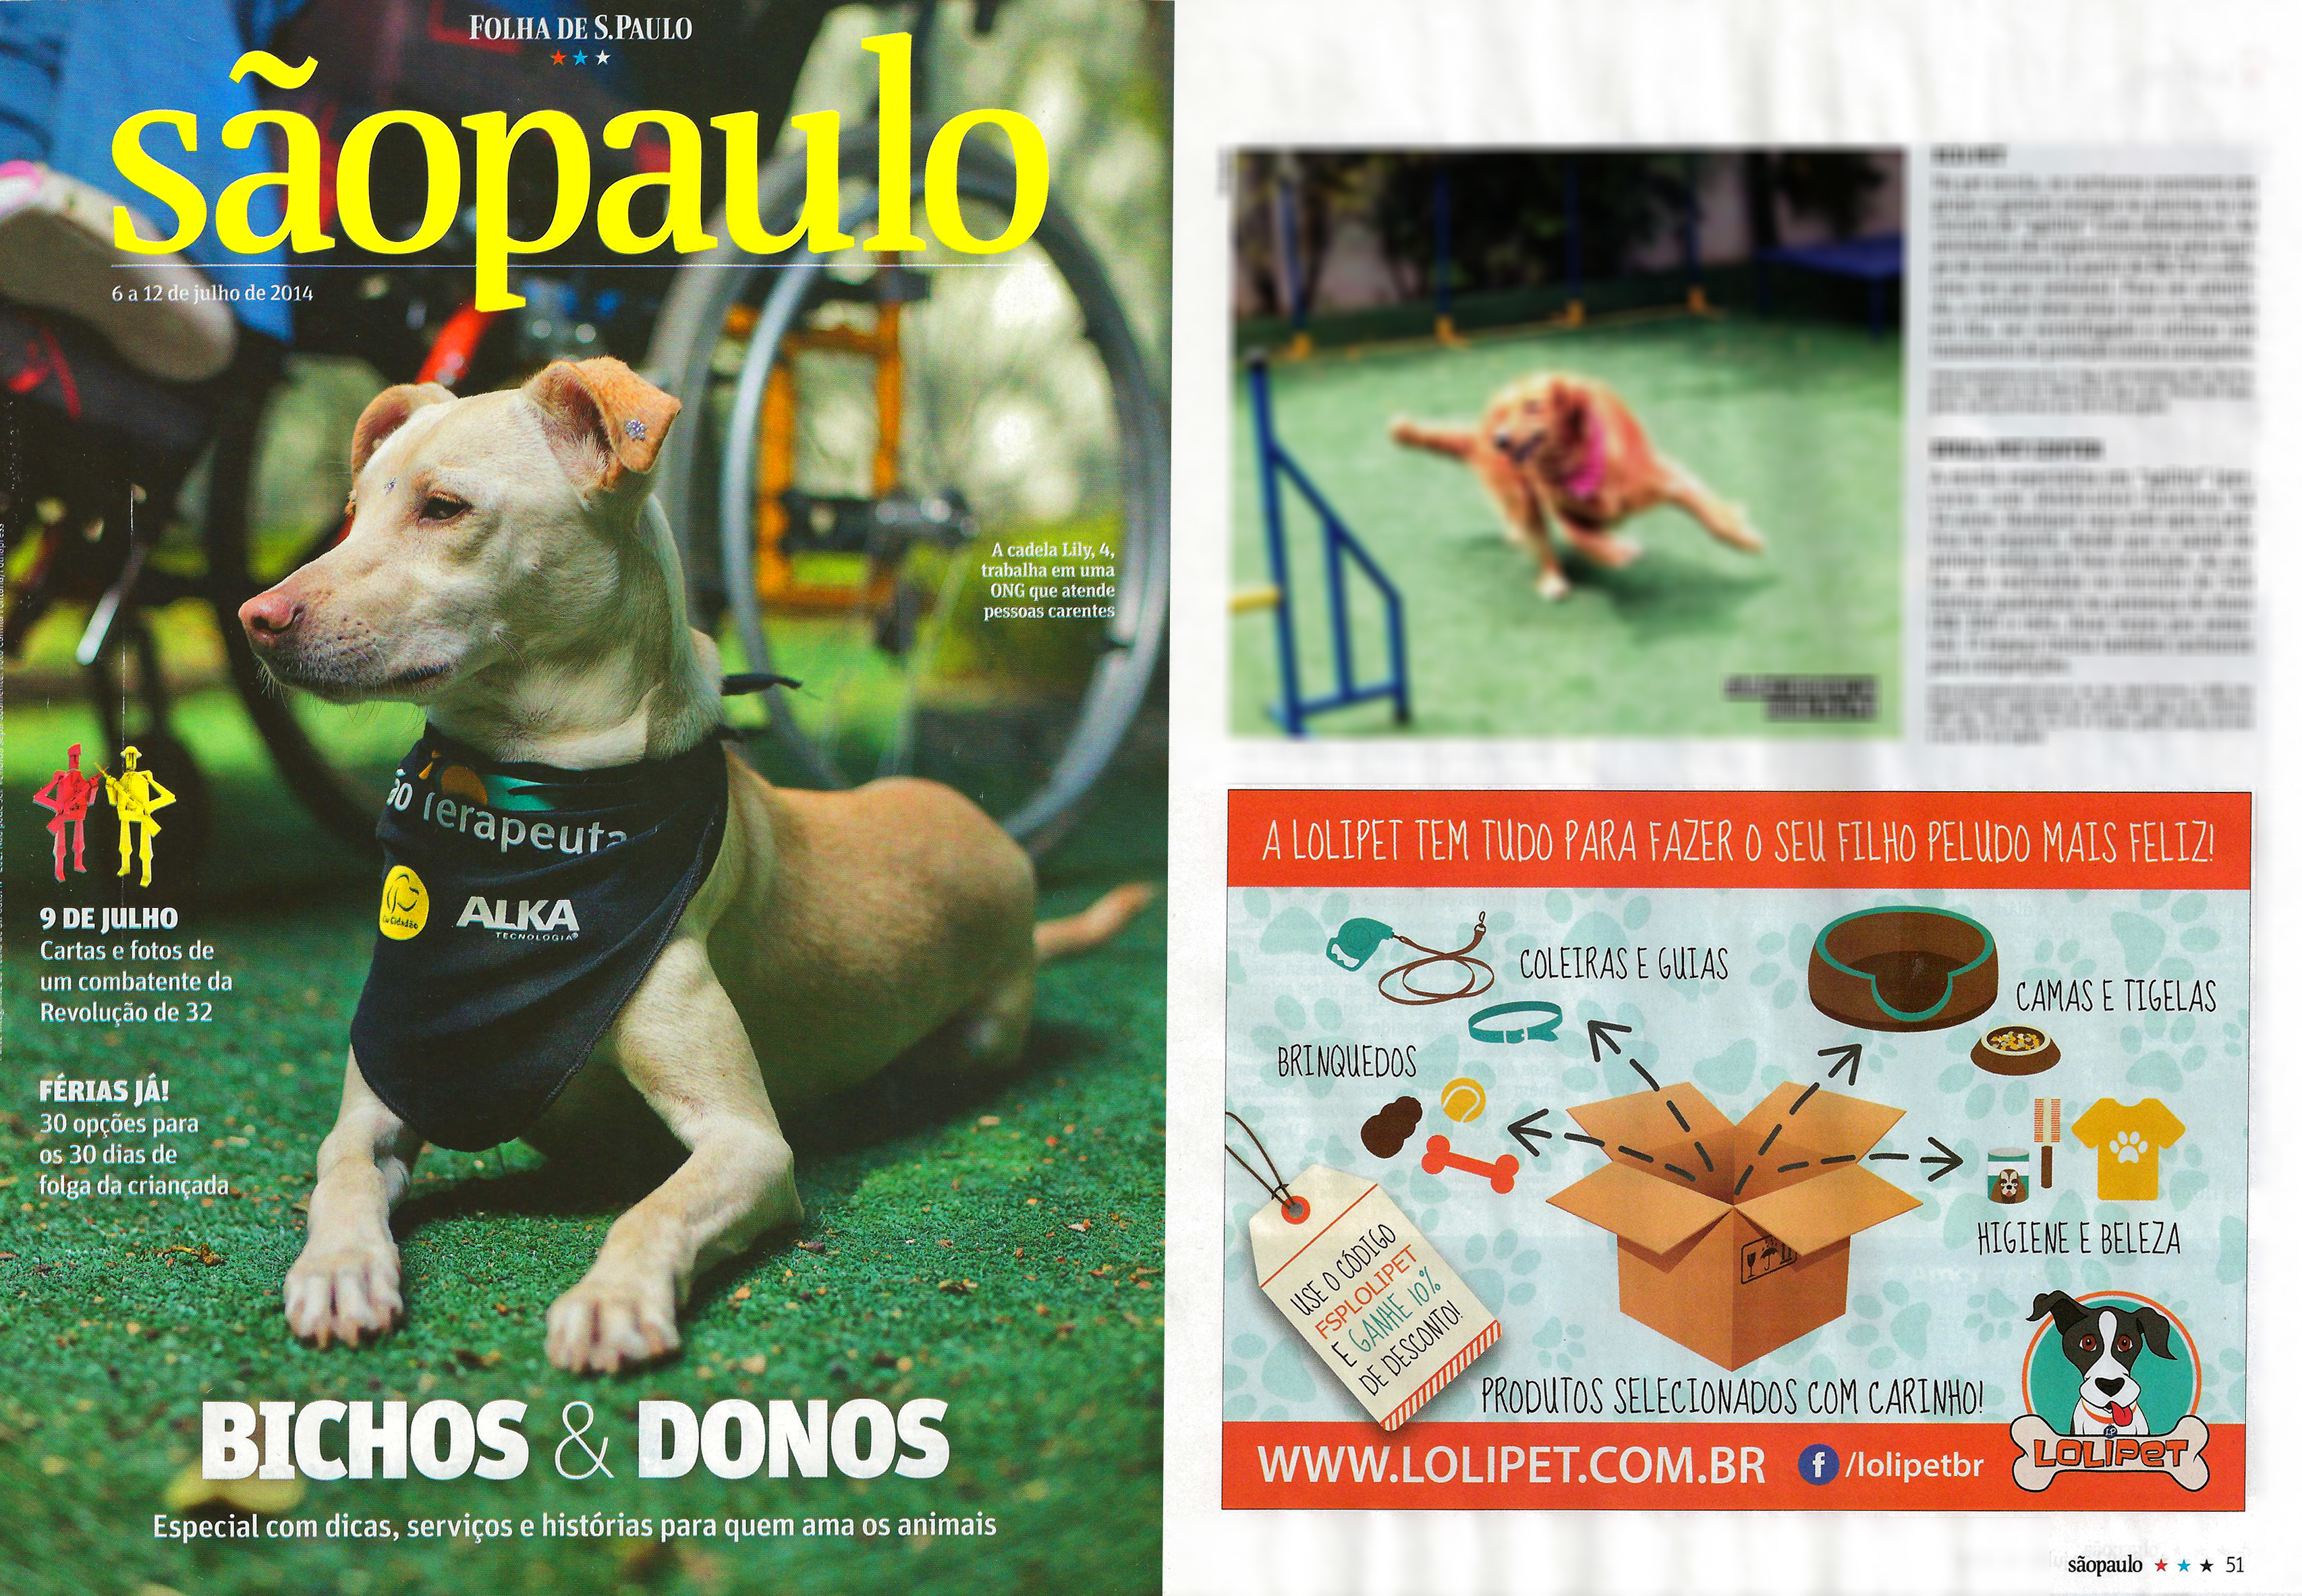 Saiu na mídia – Revista Folha de São Paulo 06/07/2014